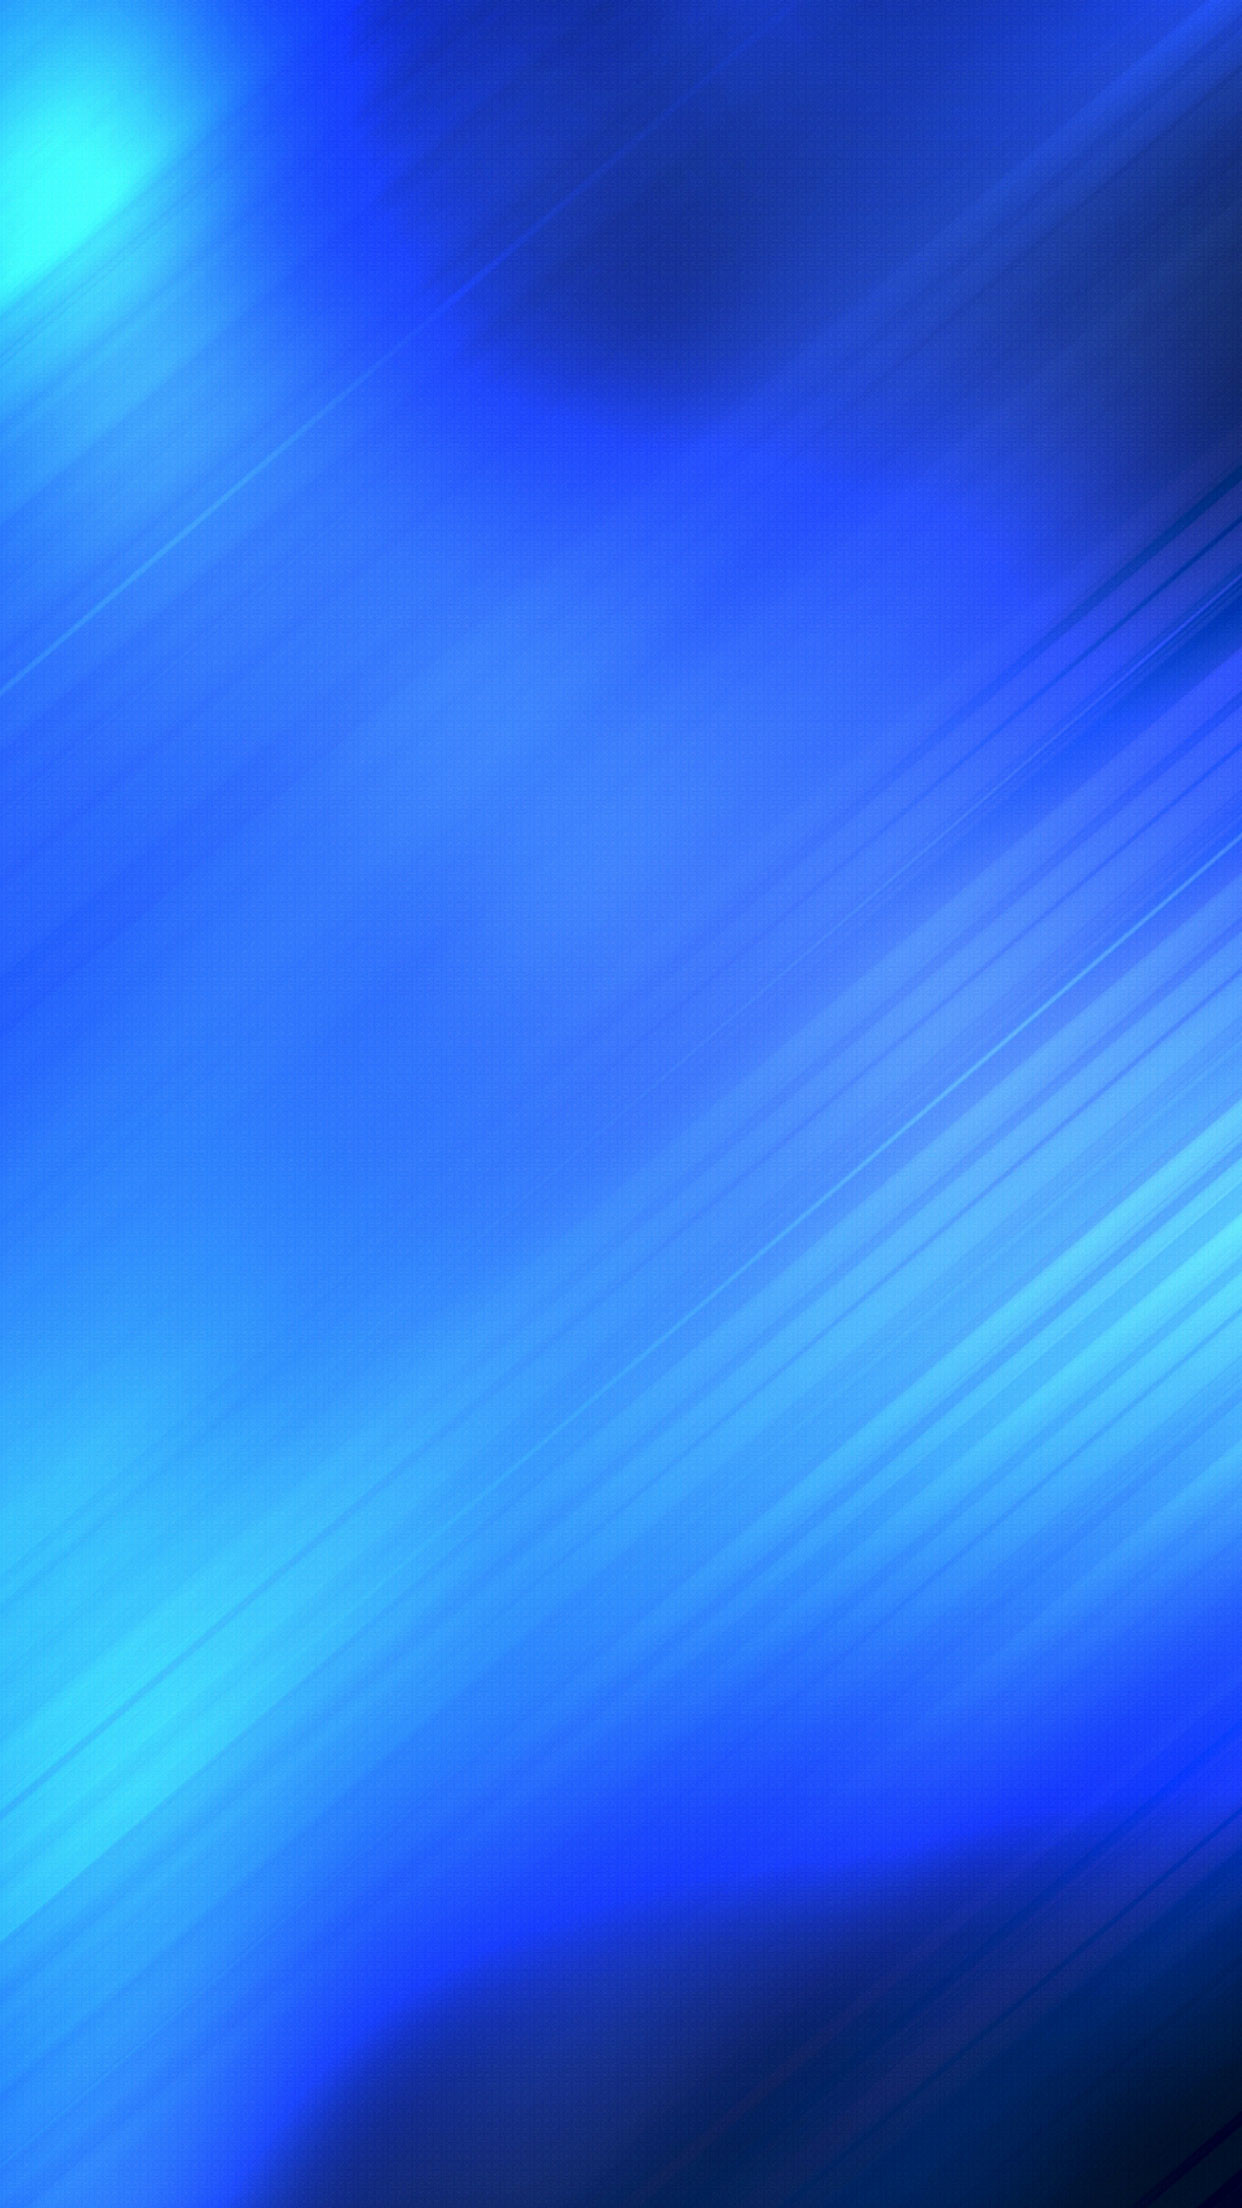 ブルー抽象的な壁紙,青い,空,コバルトブルー,エレクトリックブルー,昼間